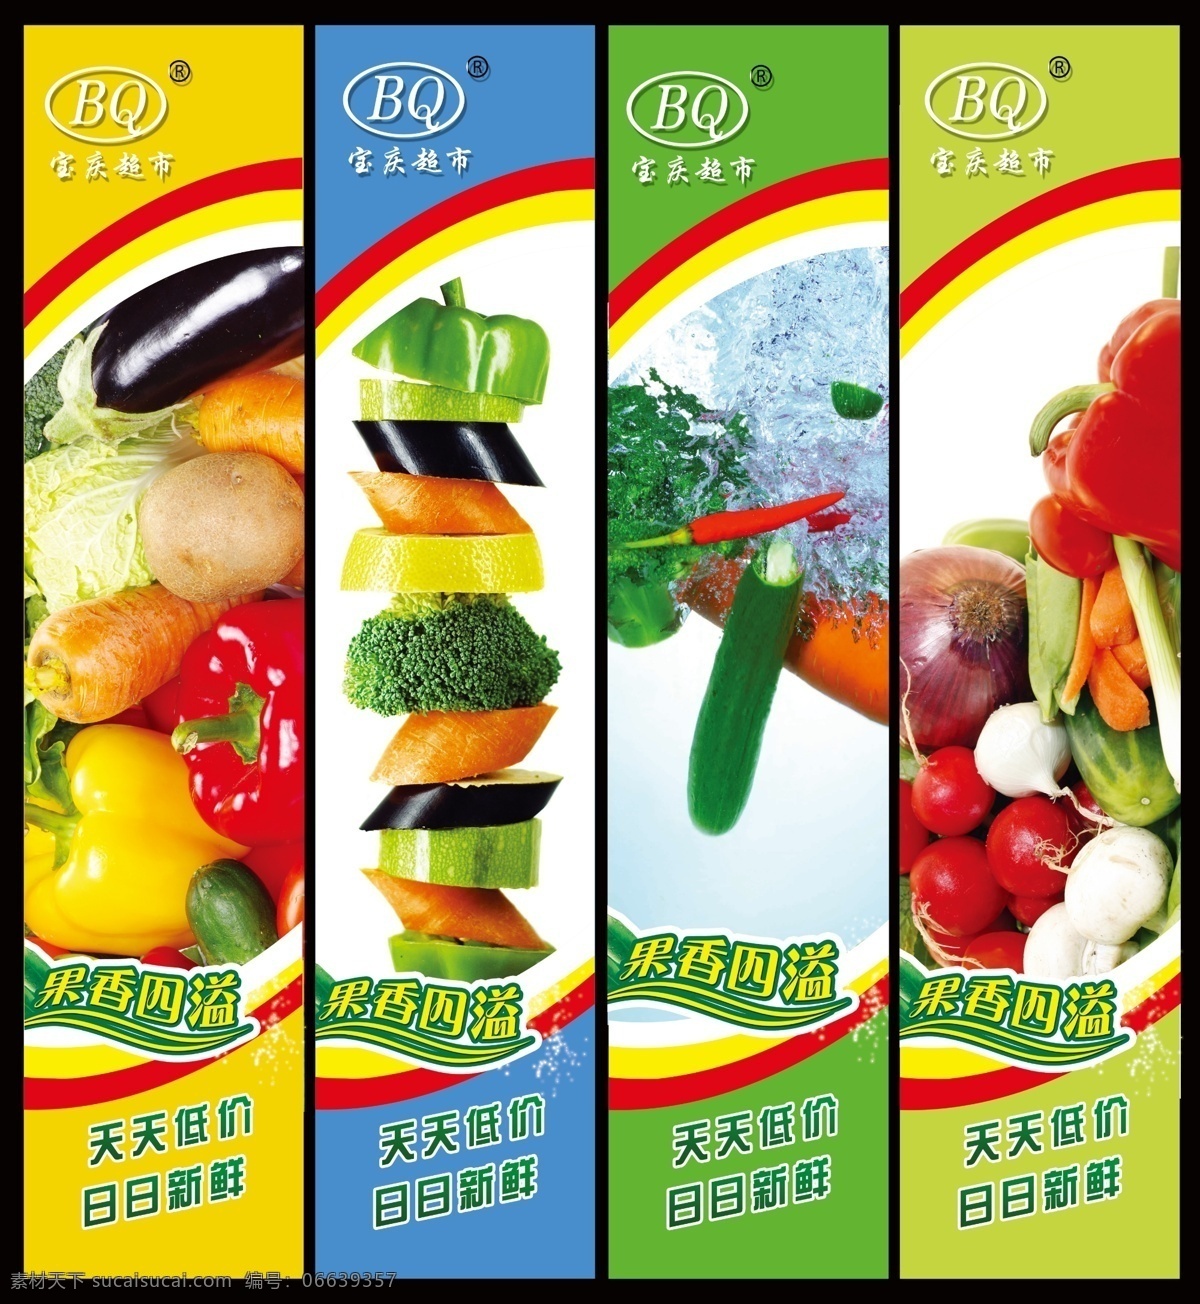 蔬菜包柱 动感蔬菜 果香四溢 各种水果 蔬菜 水果 线条 广告设计模板 源文件